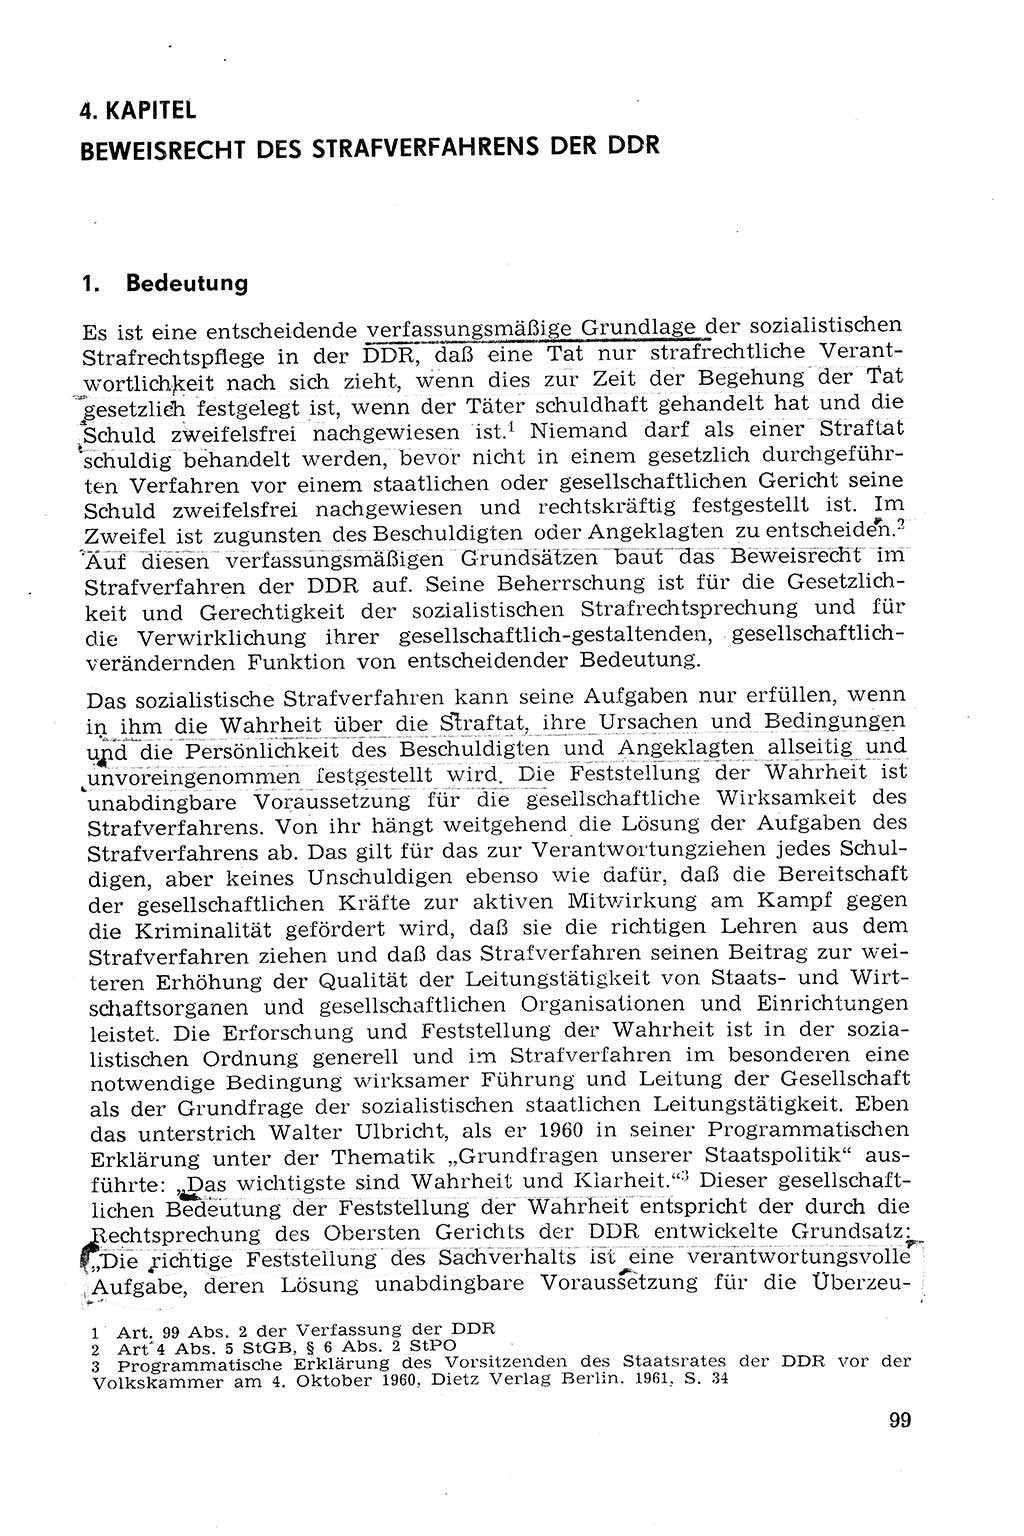 Strafprozeßrecht der DDR (Deutsche Demokratische Republik), Lehrmaterial 1969, Seite 99 (Strafprozeßr. DDR Lehrmat. 1969, S. 99)